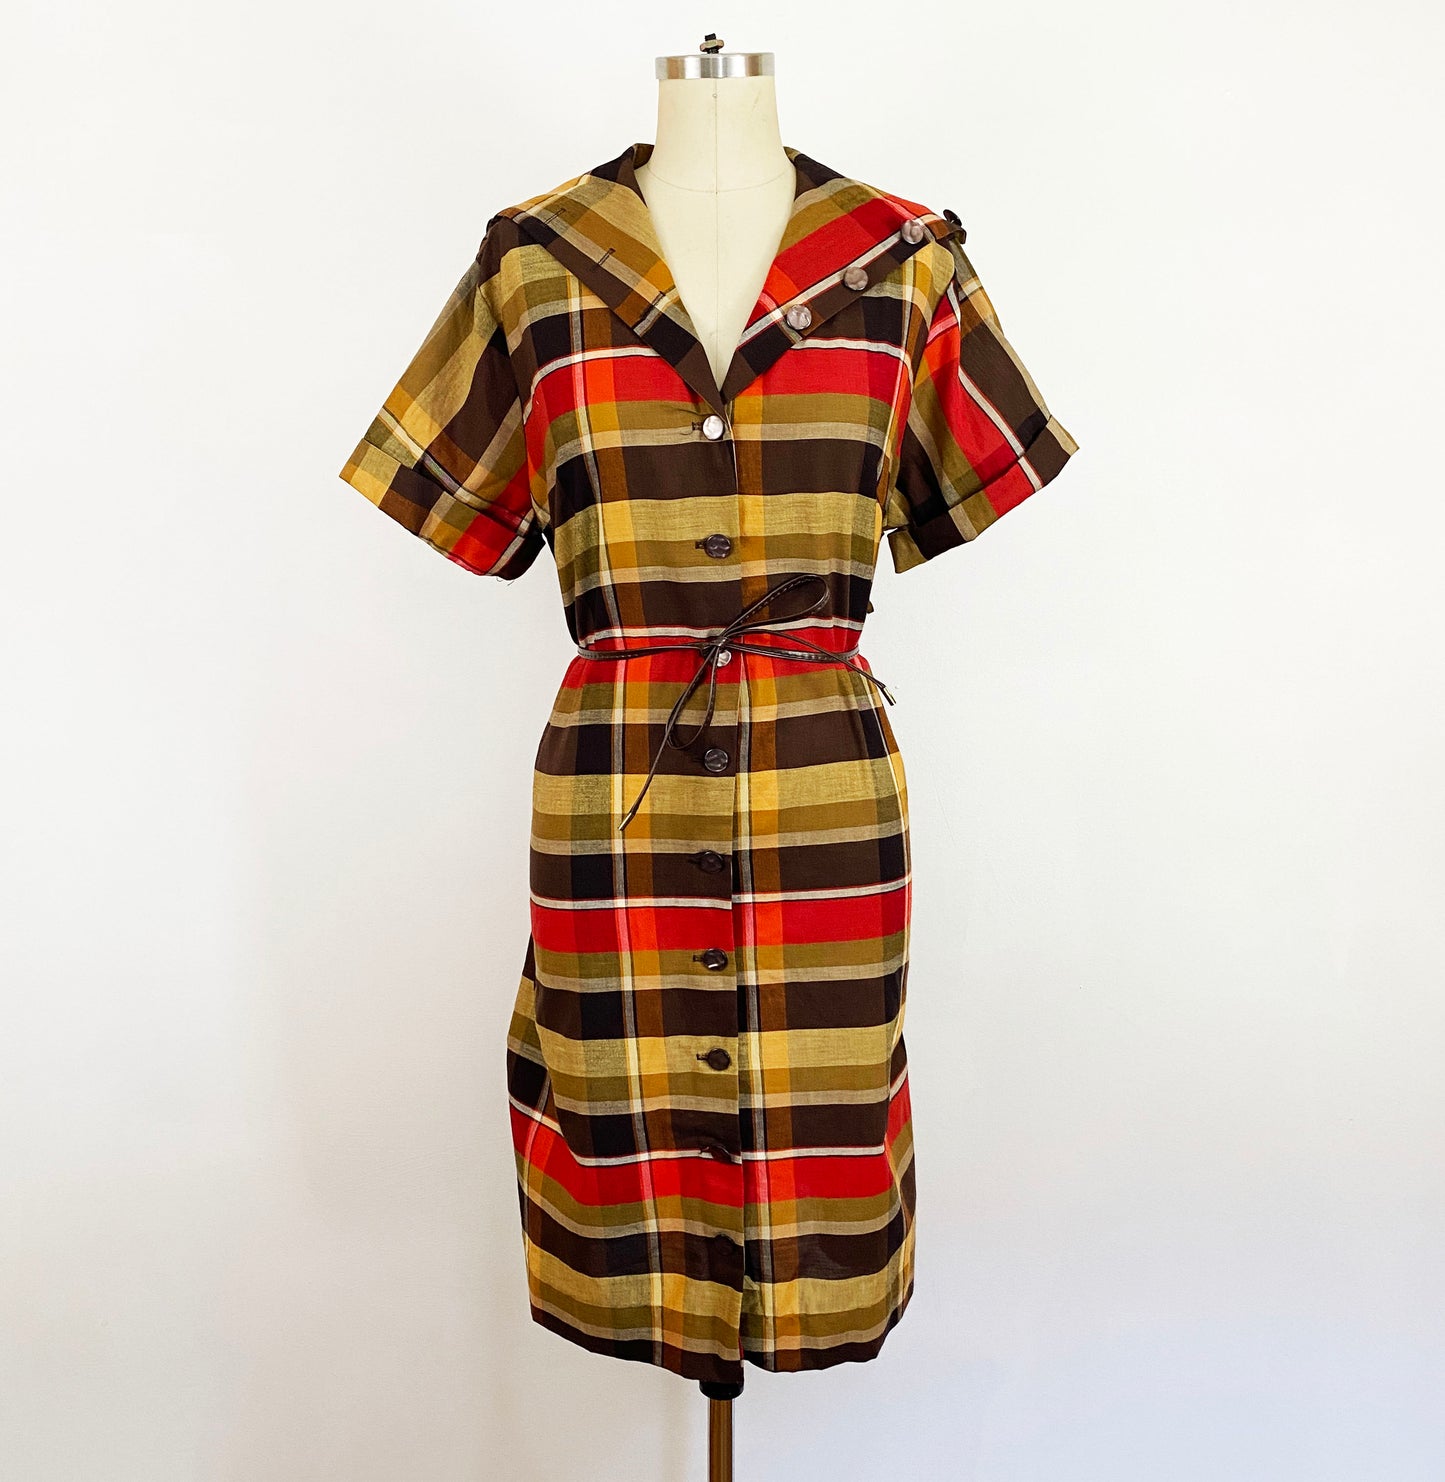 1950-1960s Autumn Plaid Cotton A-line Short Sleeve Shift Dress Button Collar Earth Tone Shirt Dress / Vintage Plus Size 0X 14/16